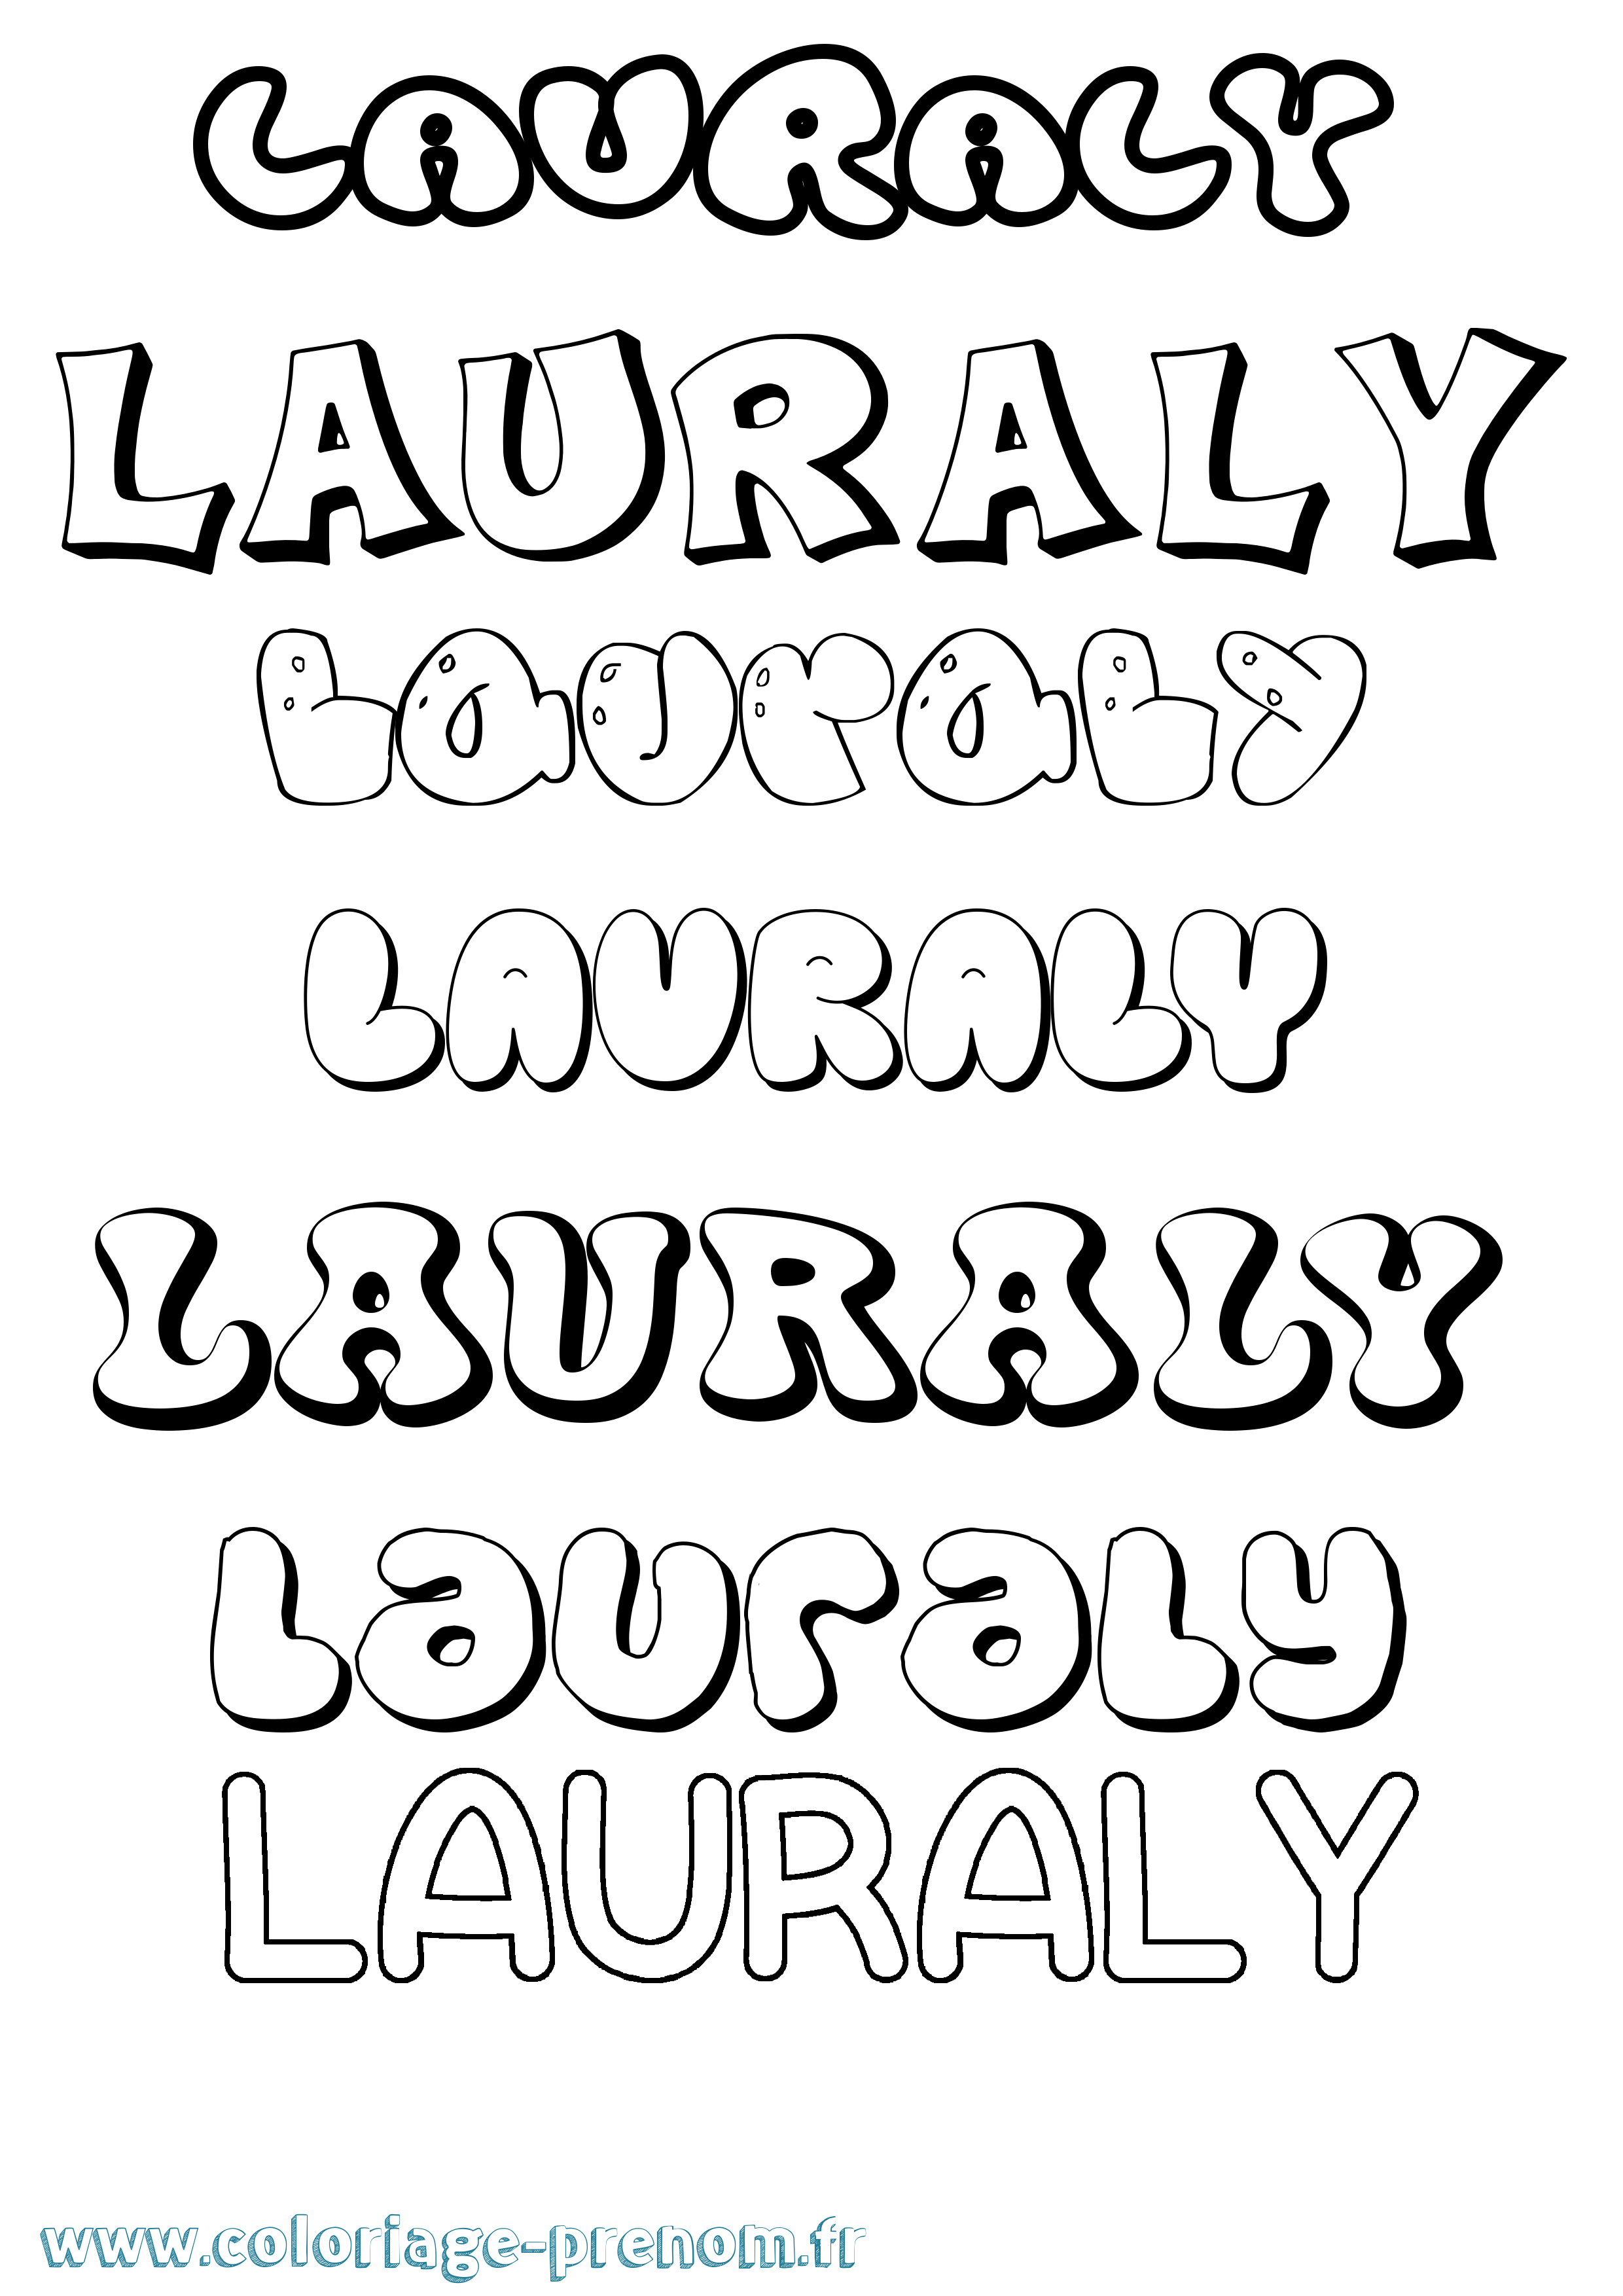 Coloriage prénom Lauraly Bubble